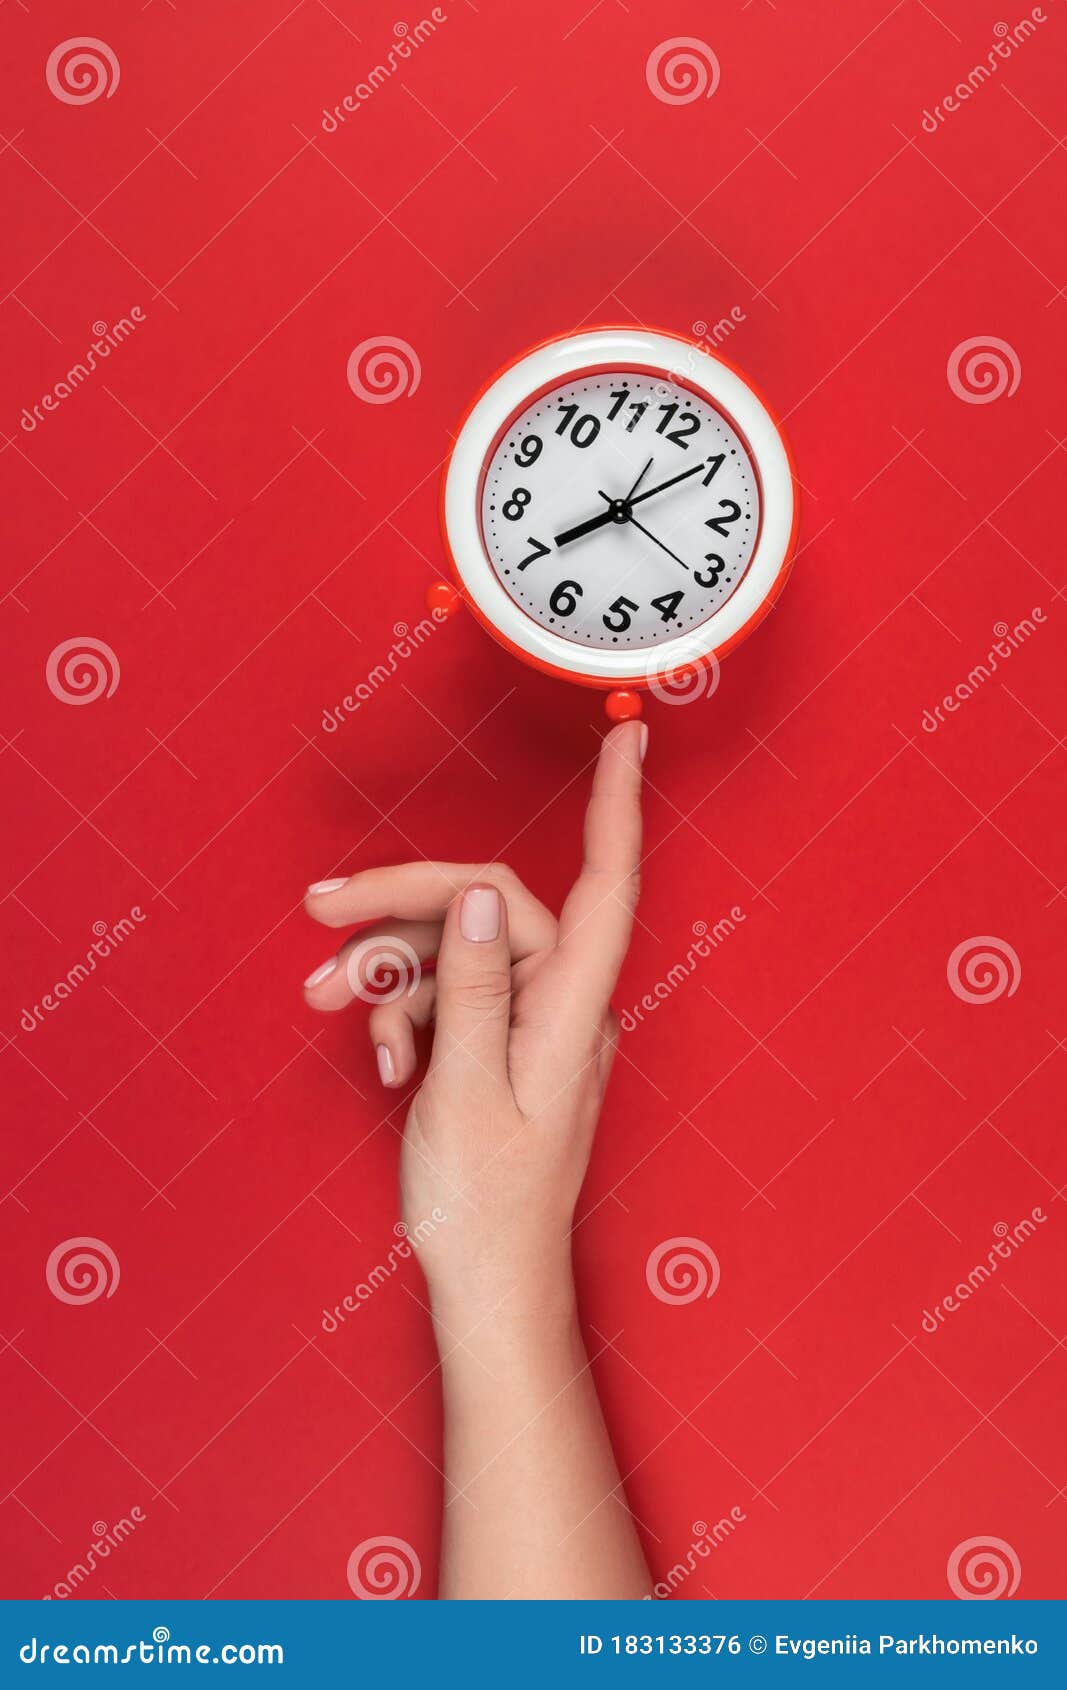 La Alarma Esta Configurada Para Las 7 Horas El Reloj Muestra 07 Horas 5 Minutos Foto De Archivo Imagen De Lunes Reloj 183133376